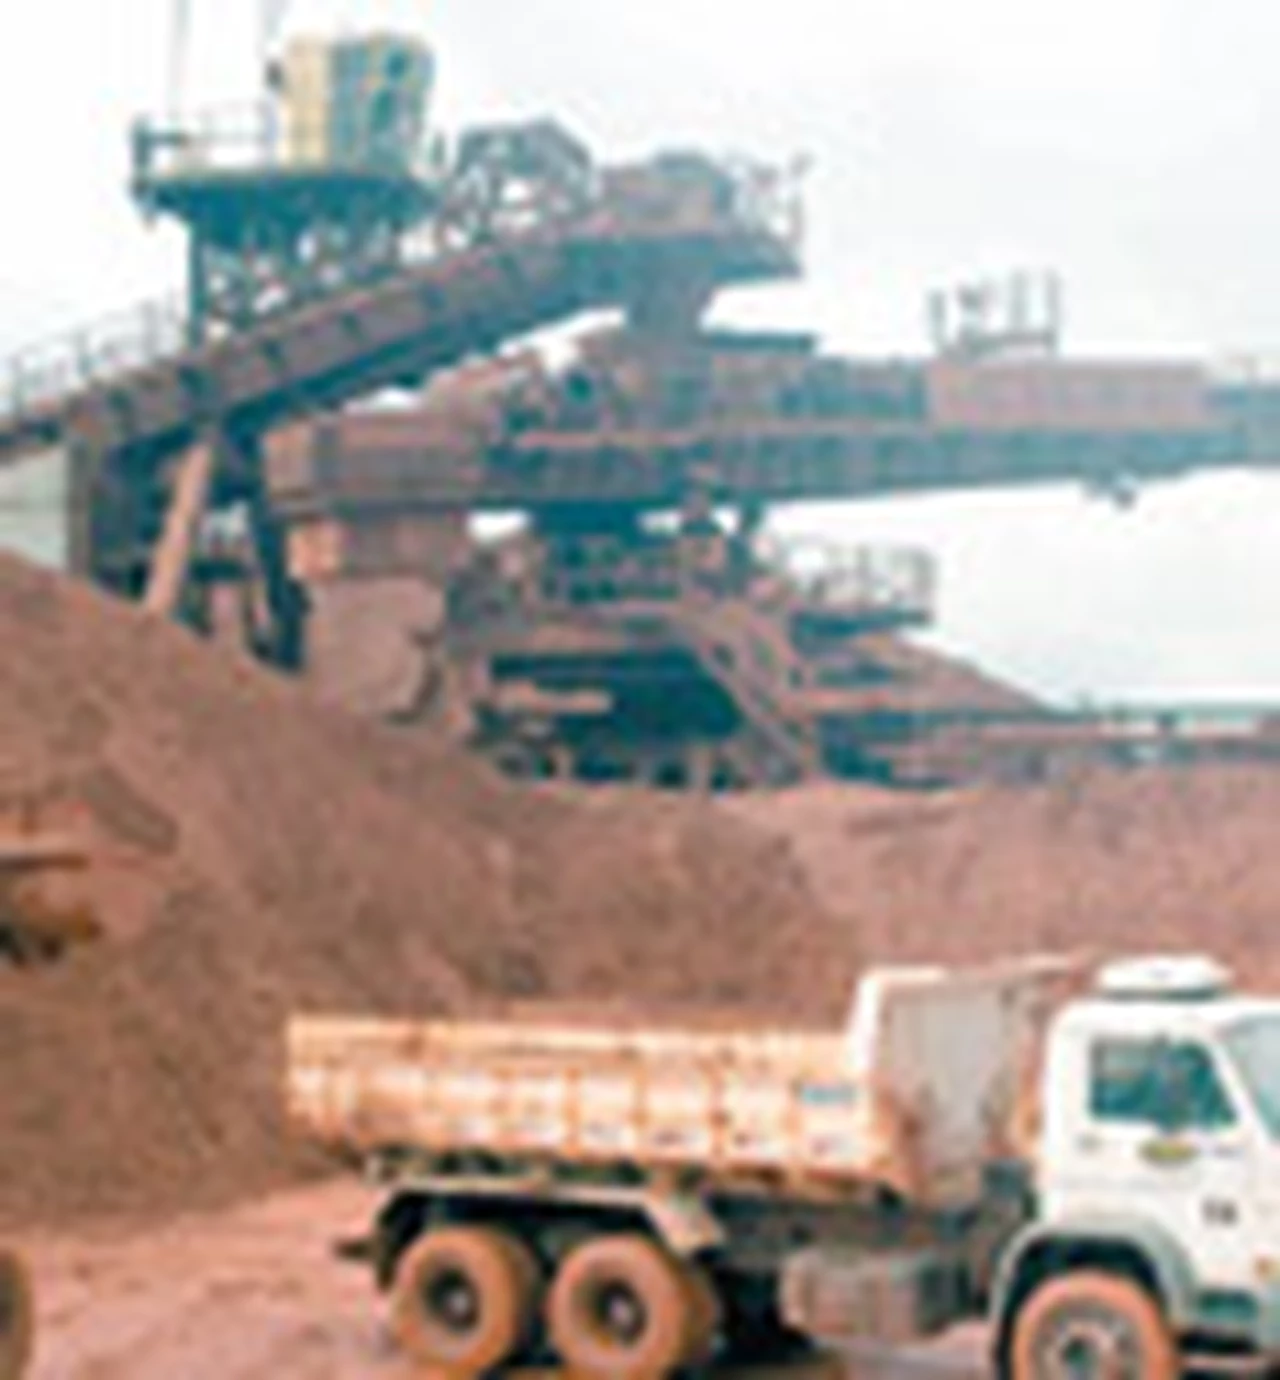 Mineras podrí­an frenar inversiones por u$s8.000 M en el paí­s